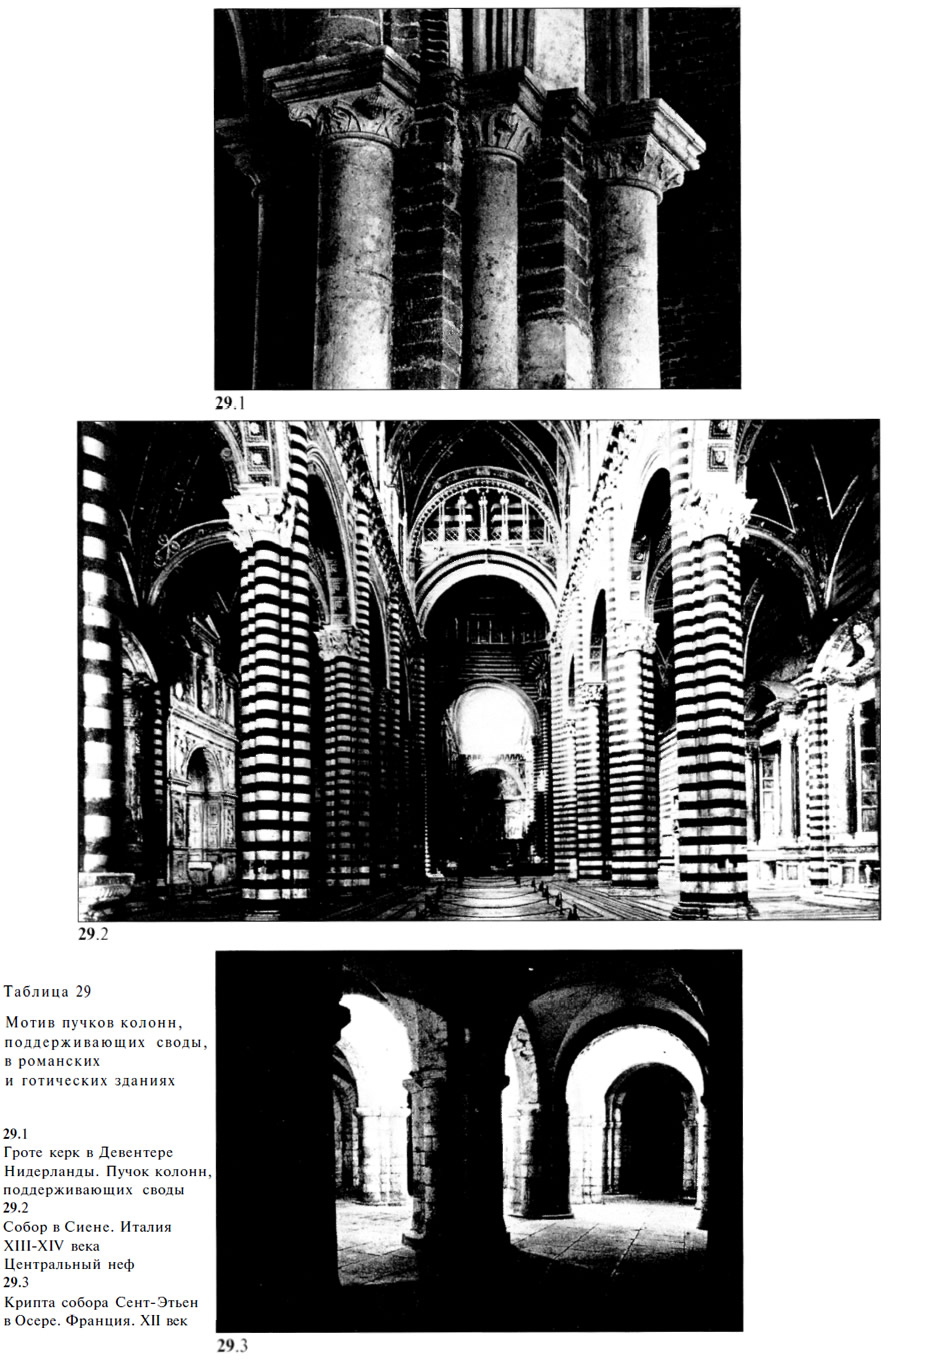 Мотив пучков колонн, поддерживающих своды, в романских и готических зданиях